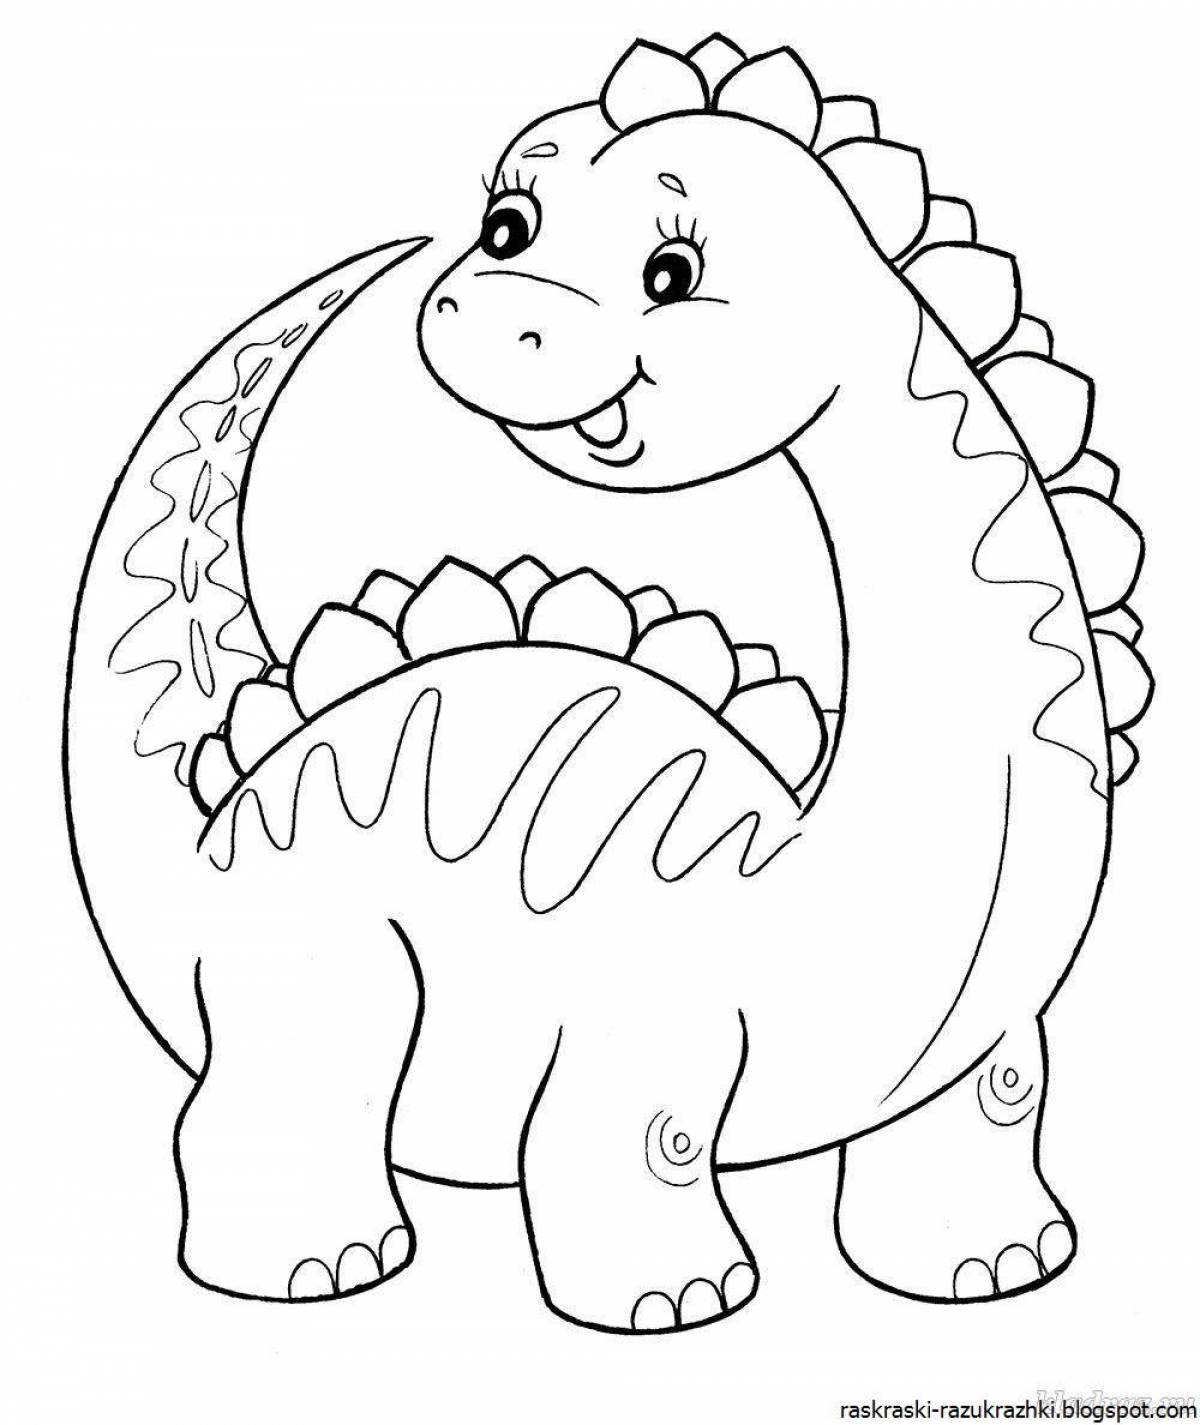 Раскраски с игривым динозавром для детей 4-5 лет